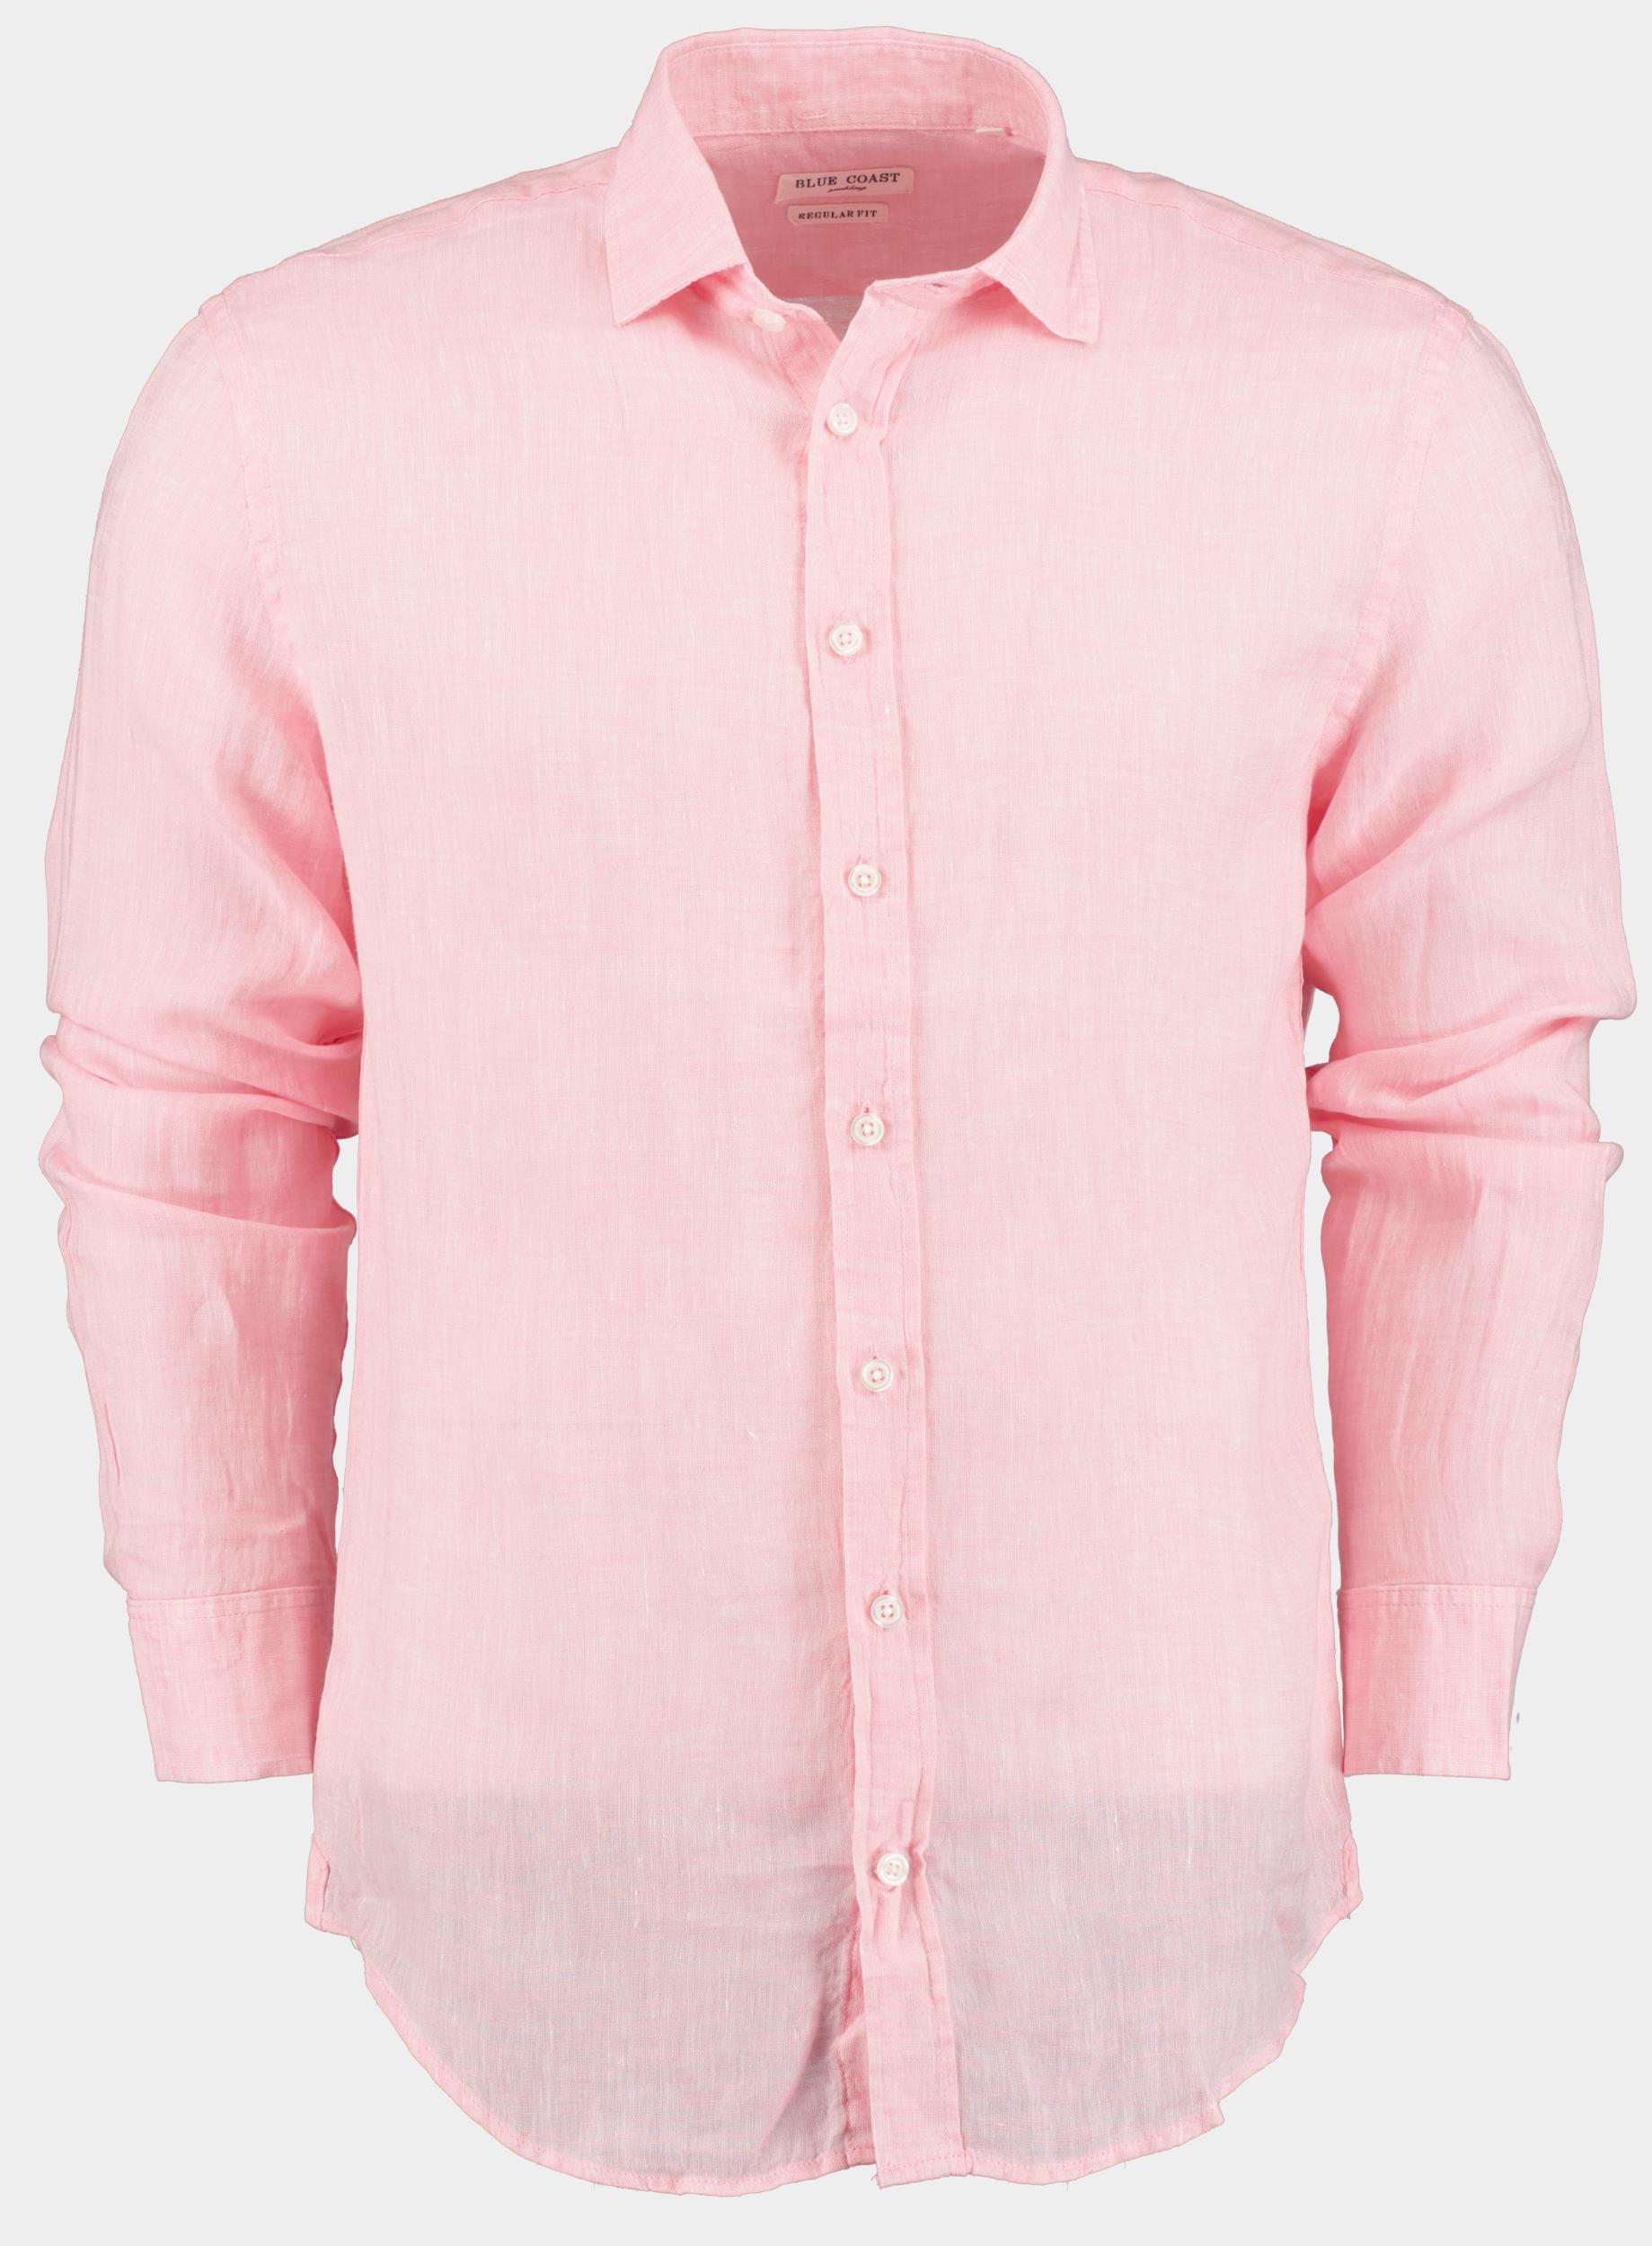 Blue Coast Casual hemd lange mouw Roze 100% Linnen MOB118 Uni/20 rosa